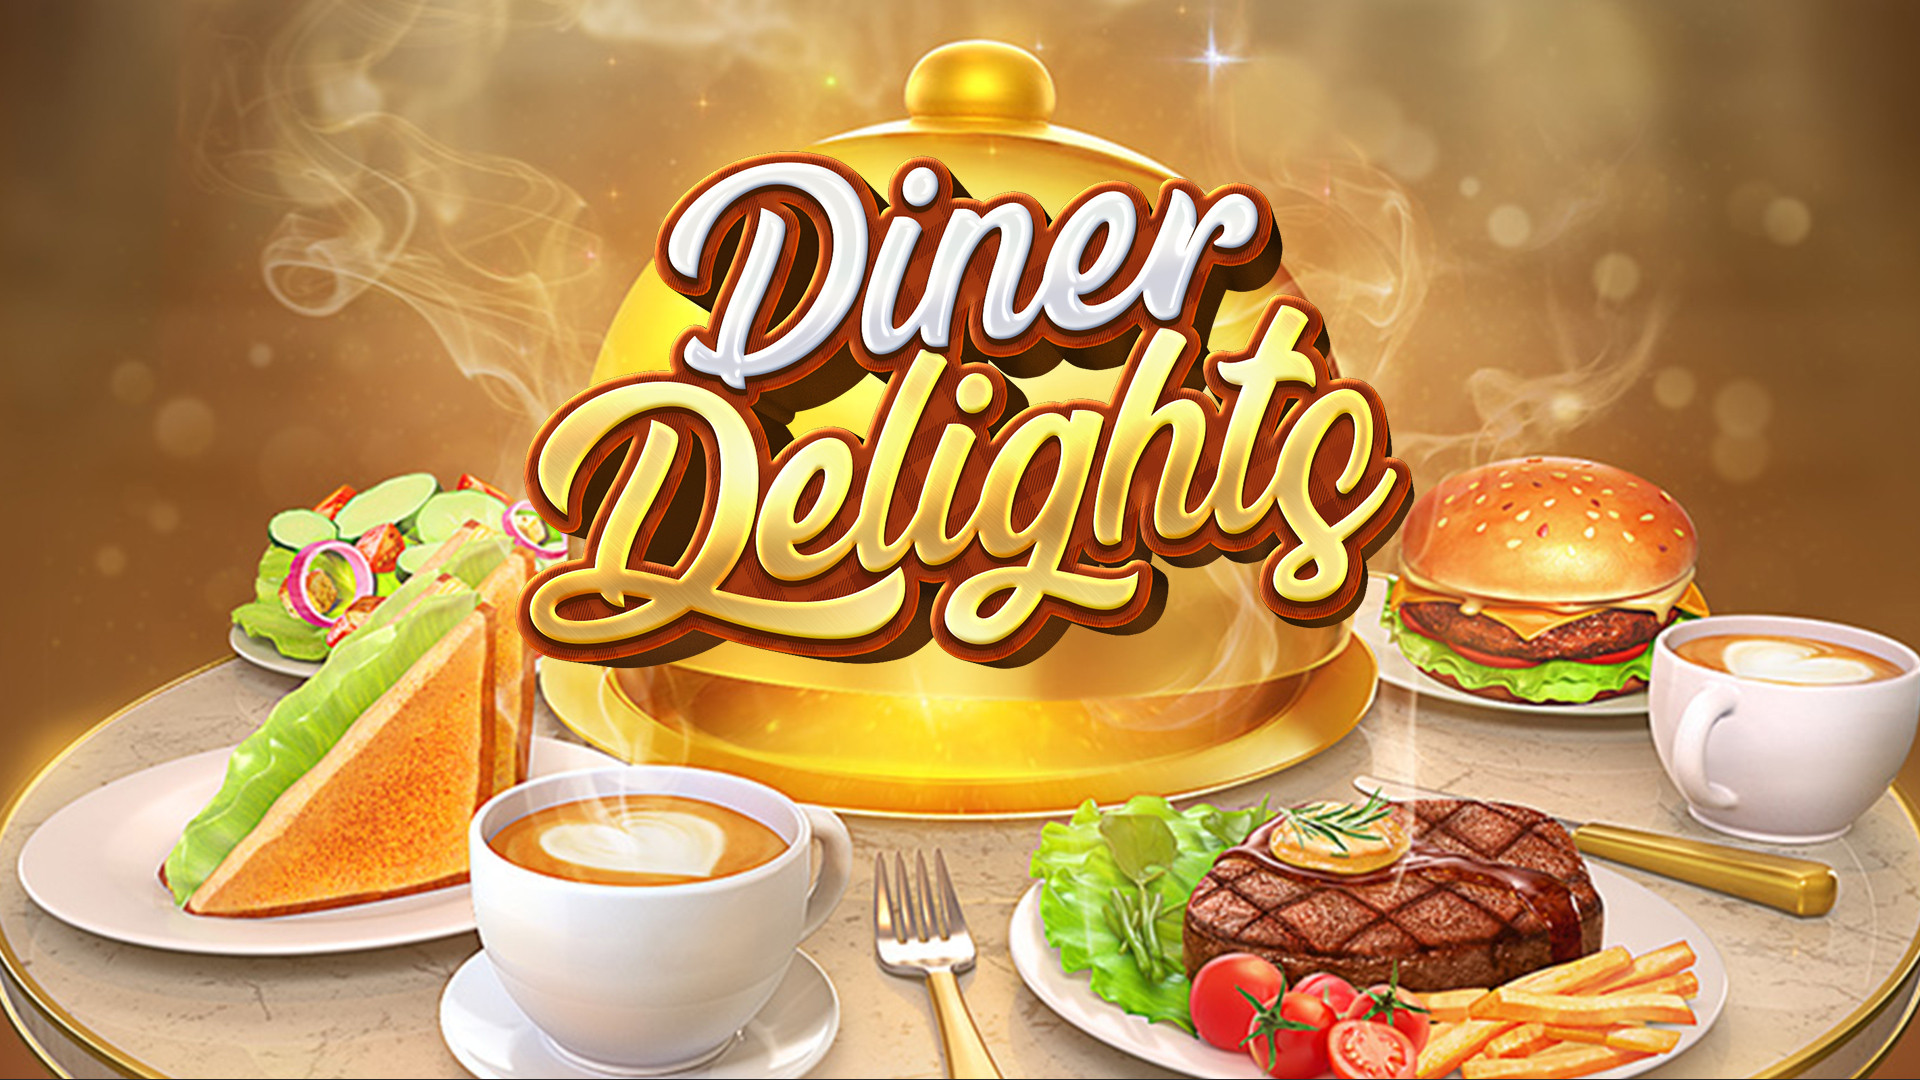 Diner Delights